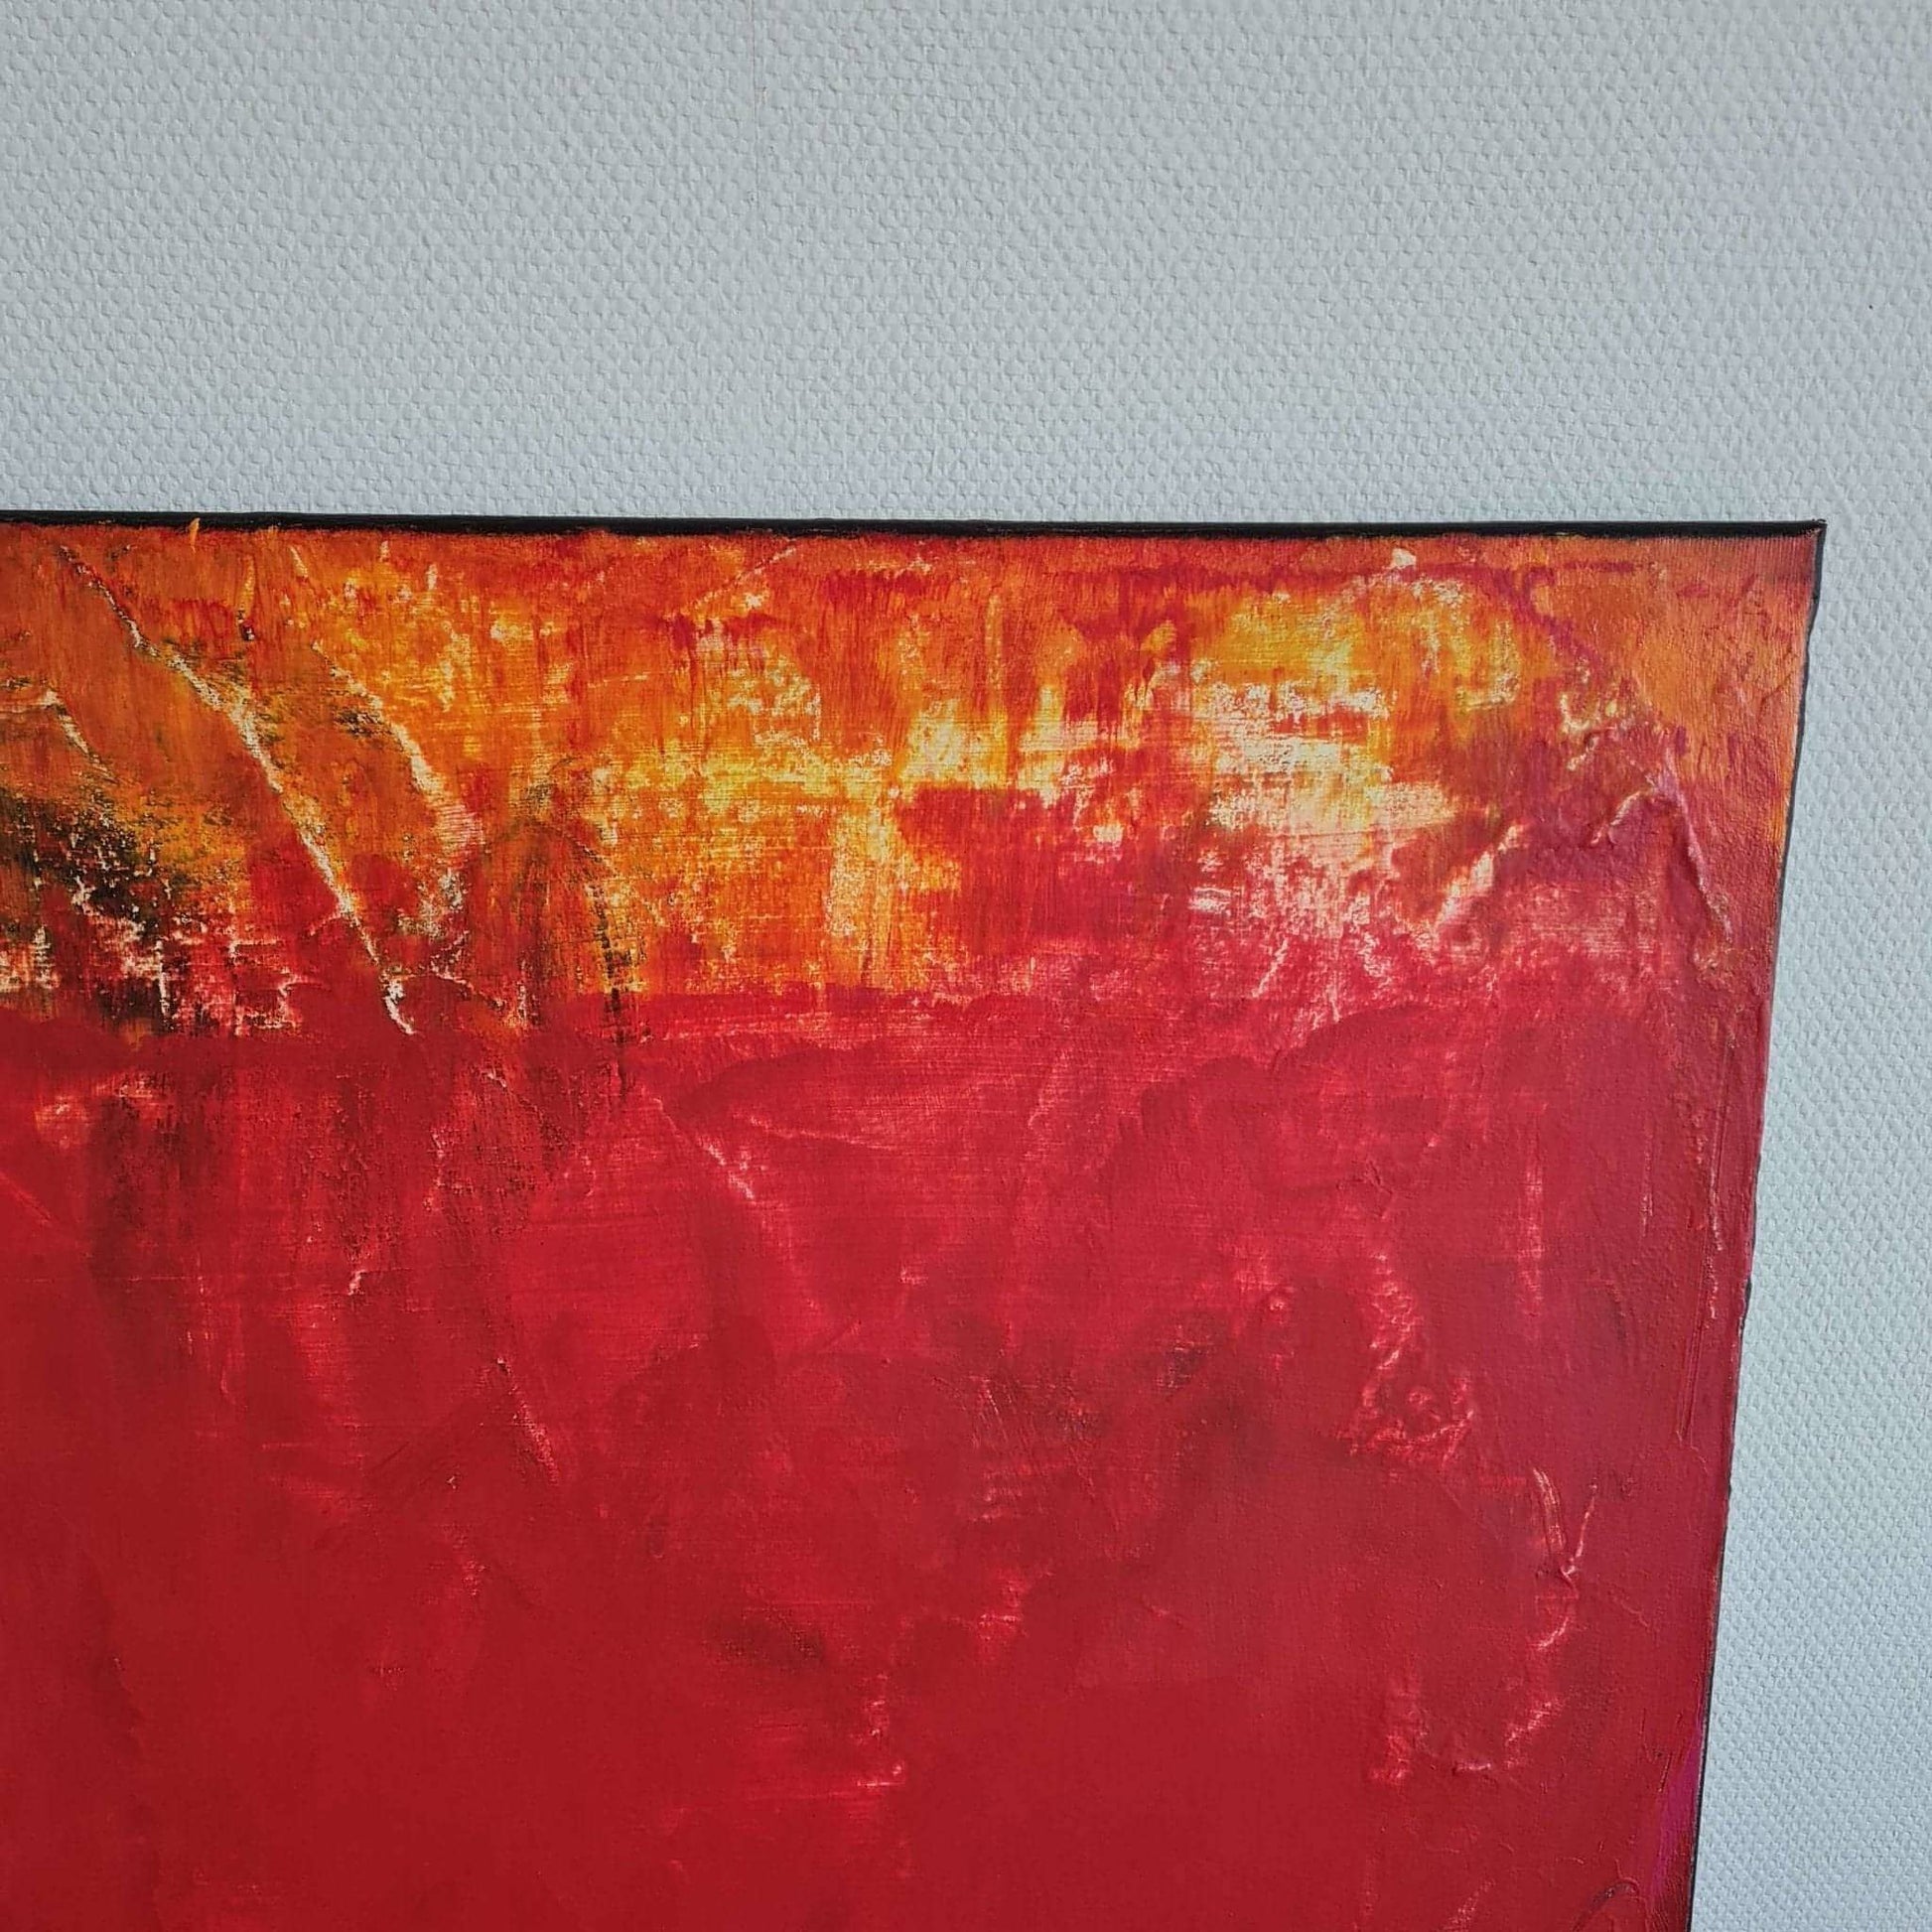 Warme Herbstsonne" - Abstraktes Gemälde in quadratischem Format Abstrakte Bilder & moderne Auftragsmalerei, abstrakte große bilder online kaufen, Auftrags Malere